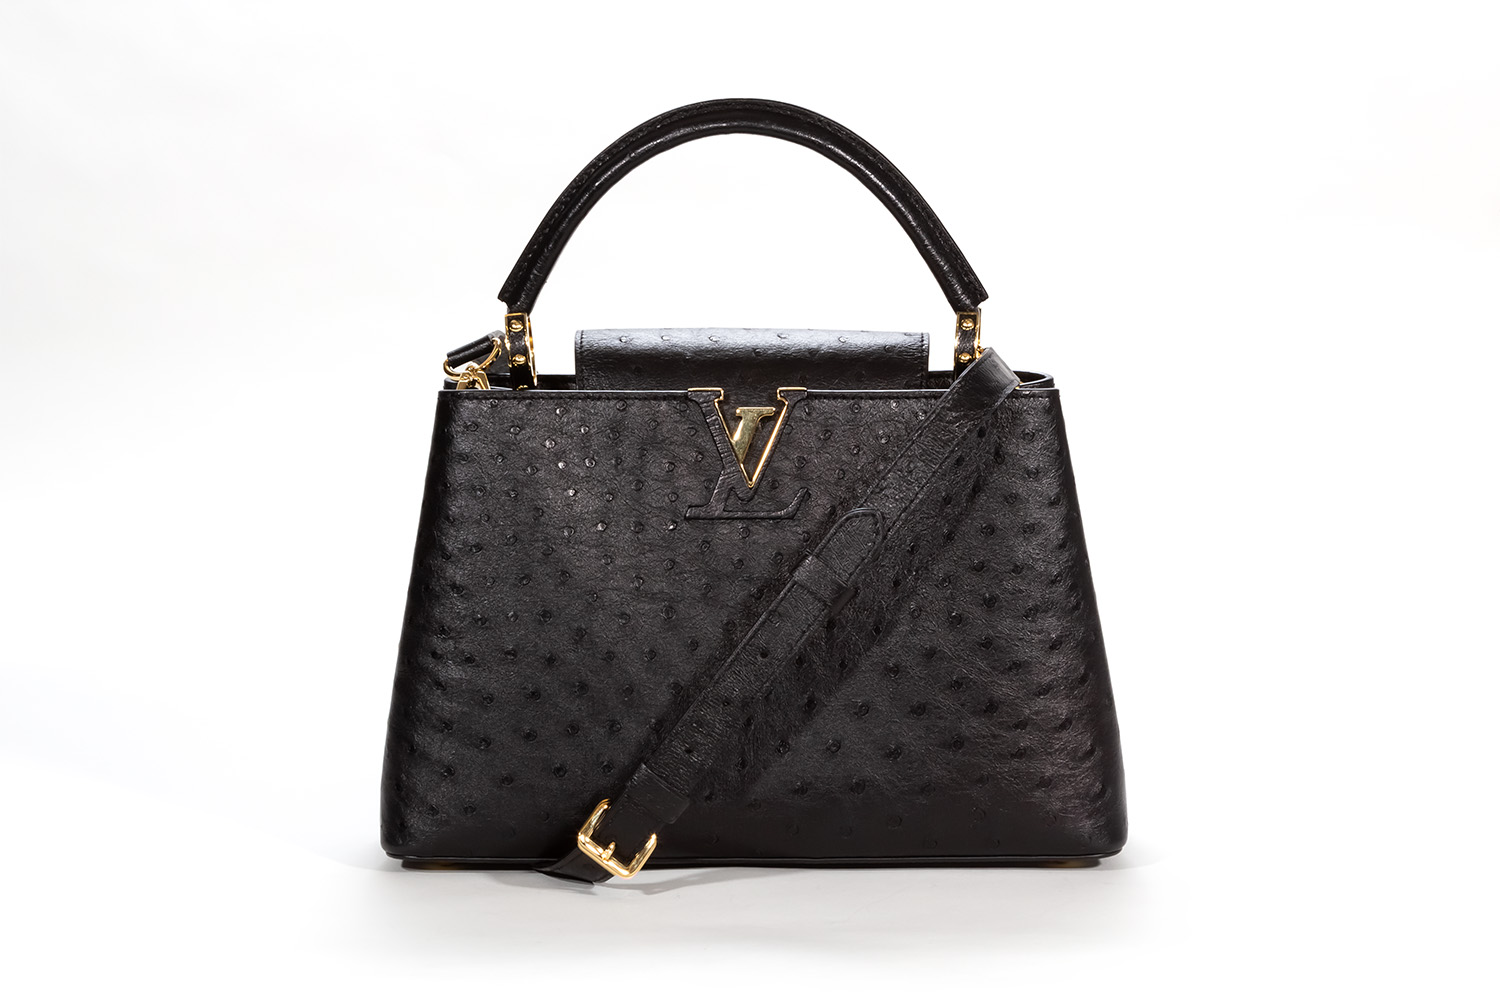 Louis Vuitton Lv woman bag capucines black large size